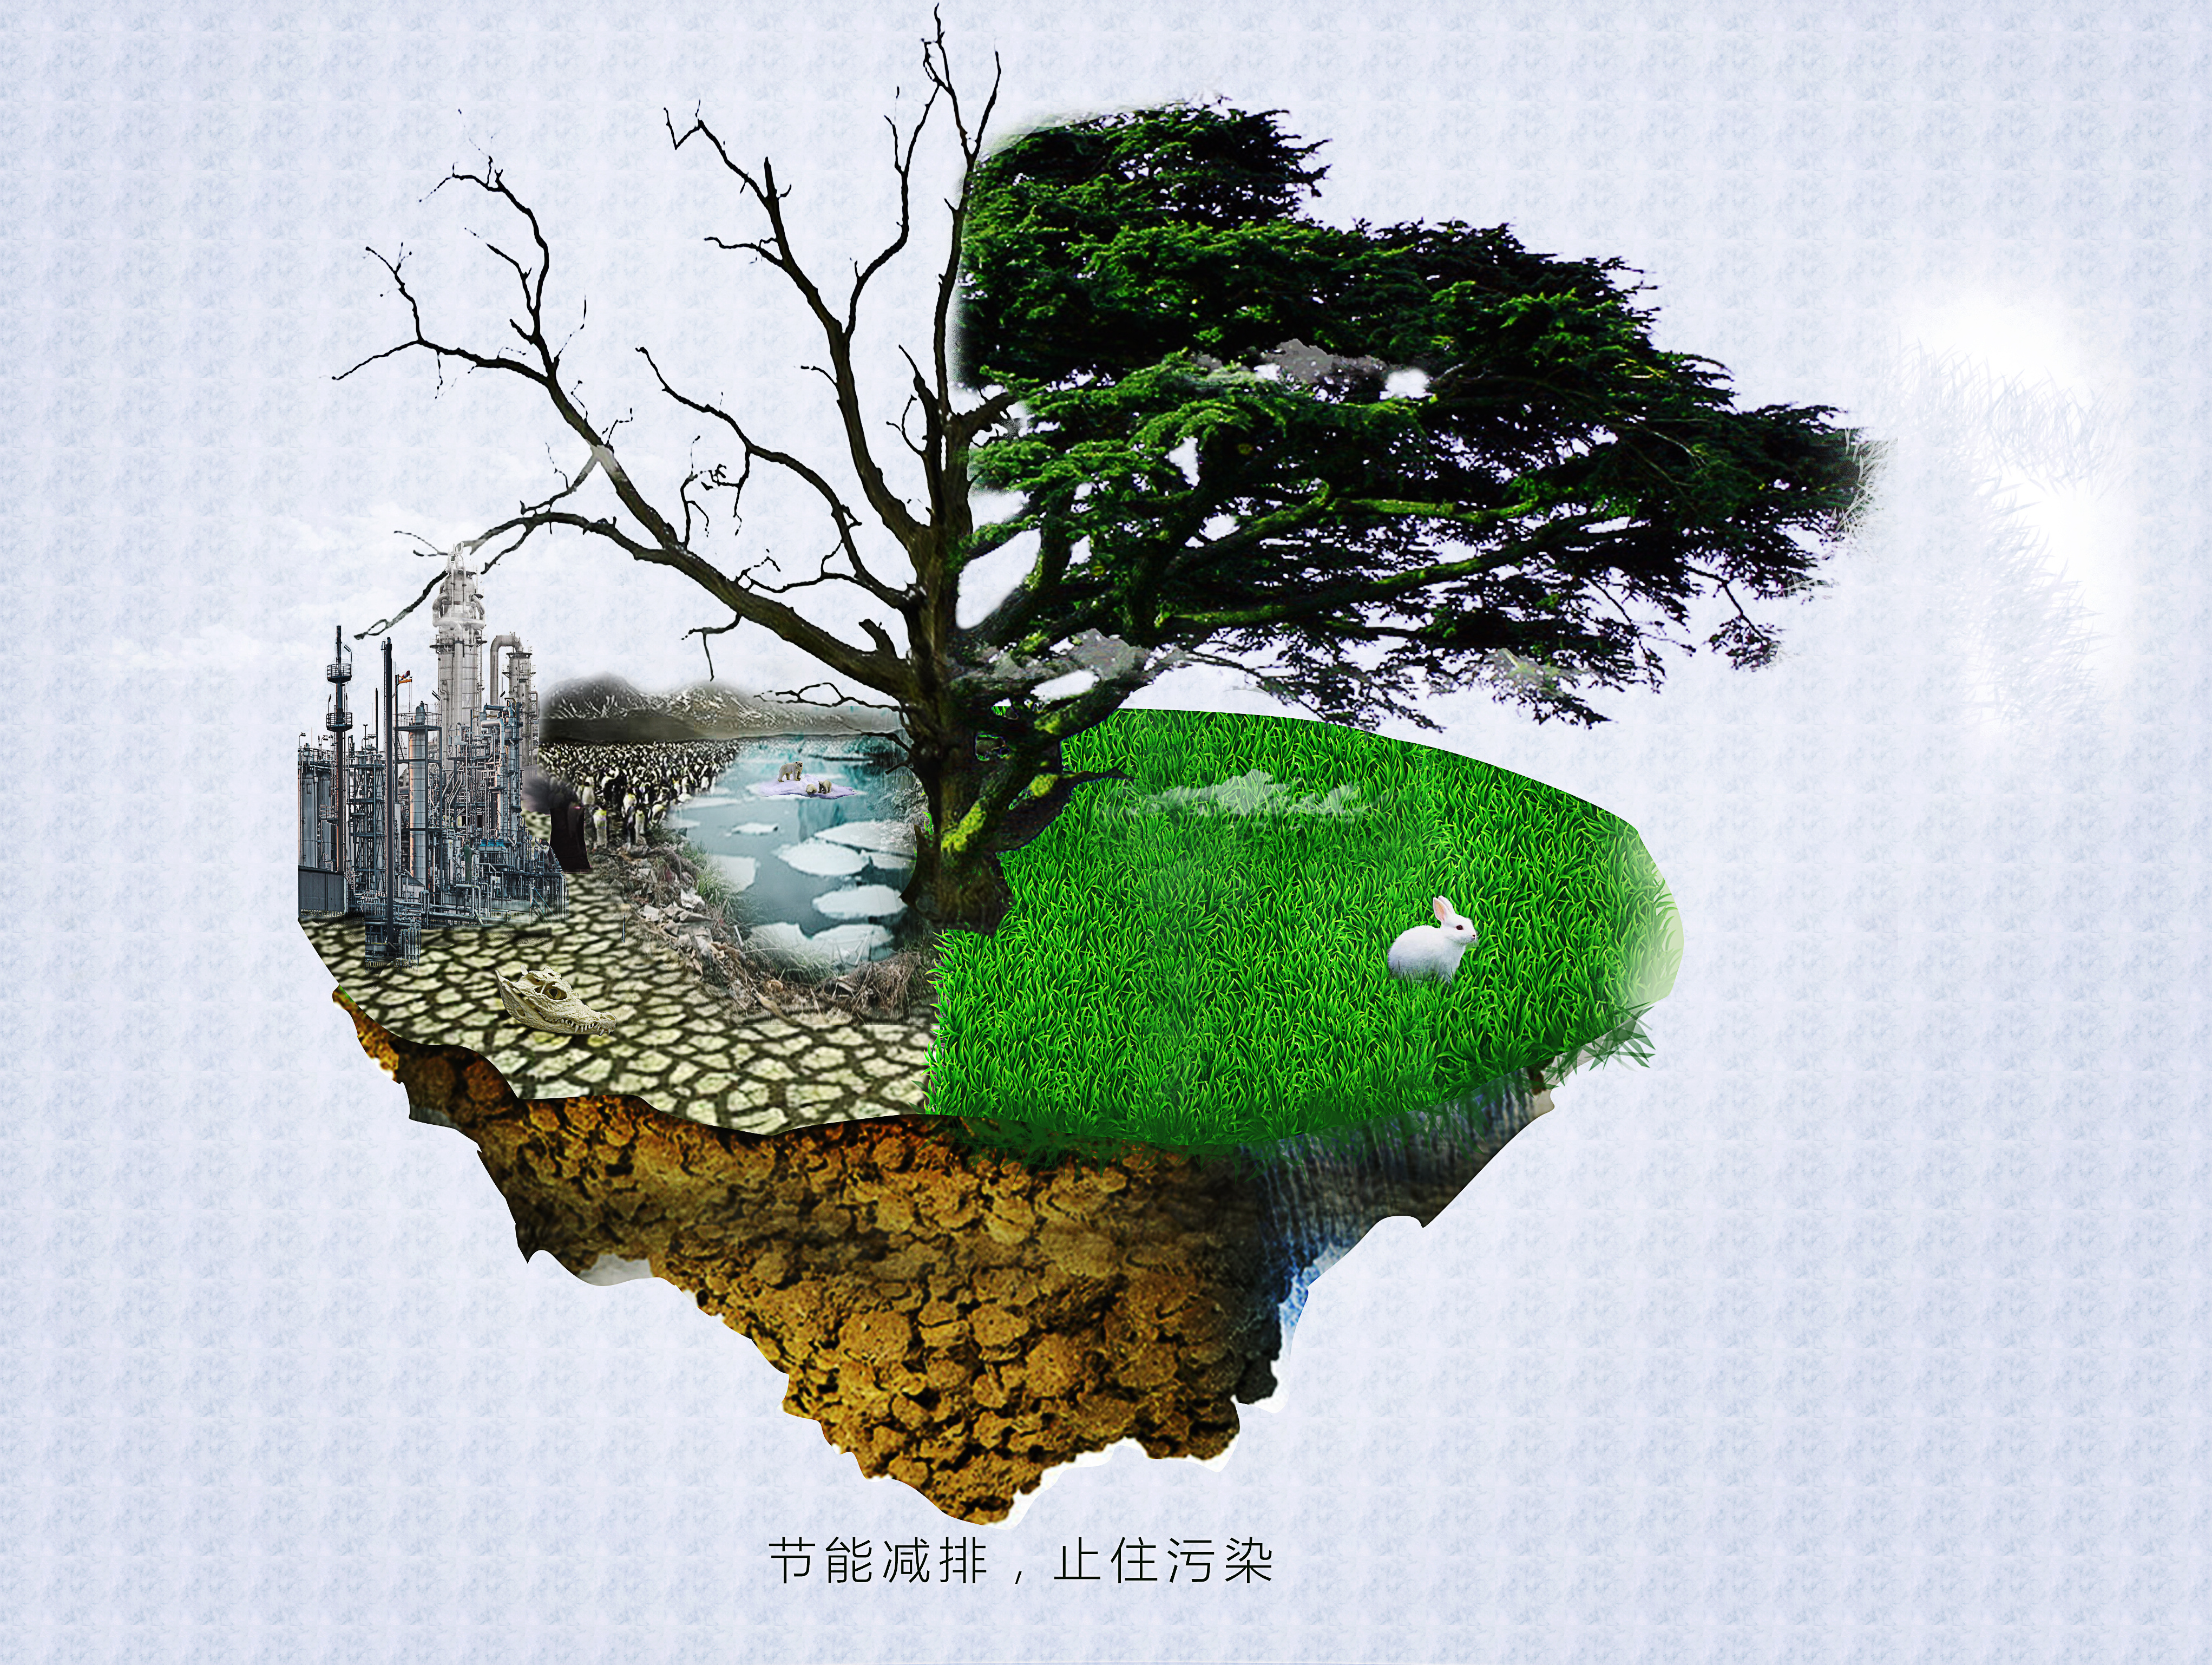 九江职业技术学院 经济管理学院 大学生节能减排主题参赛海报设计作品